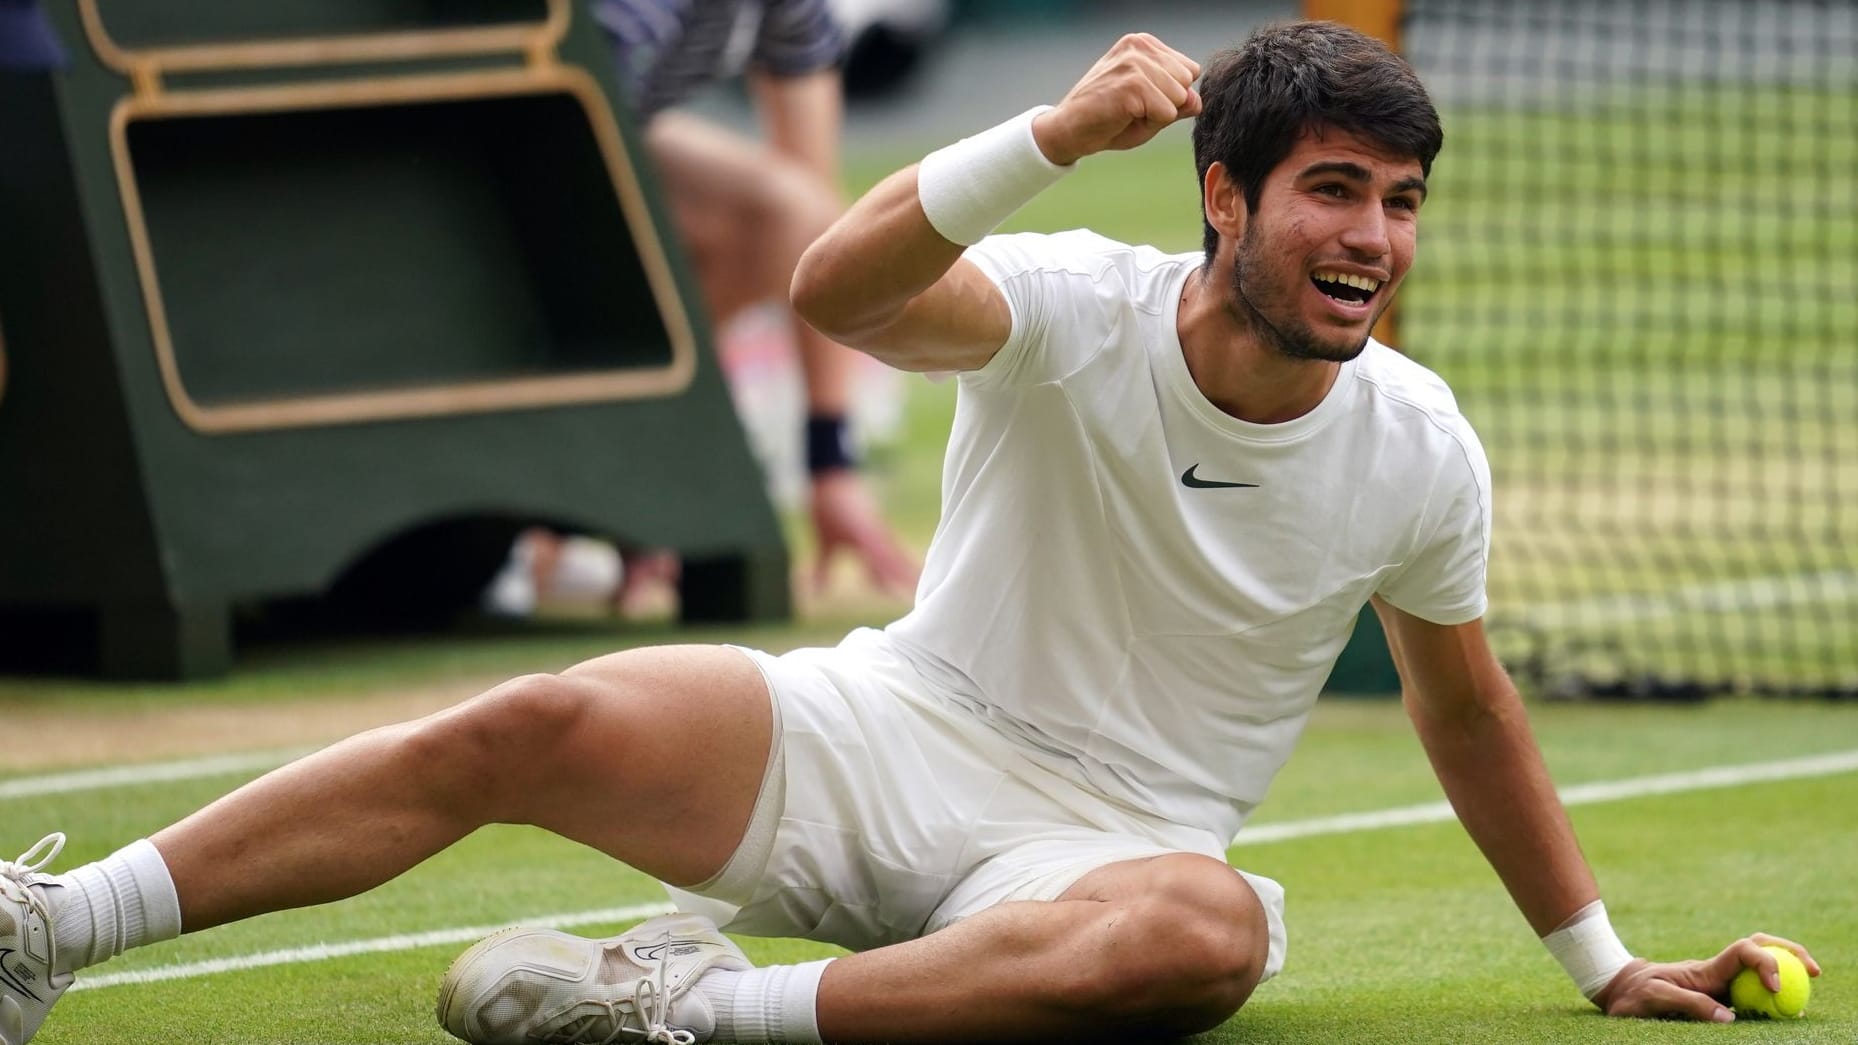 Wimbledon-Finale im Liveticker: Historisches Endspiel – Carlos Alcaraz gewinnt gegen Djokovic